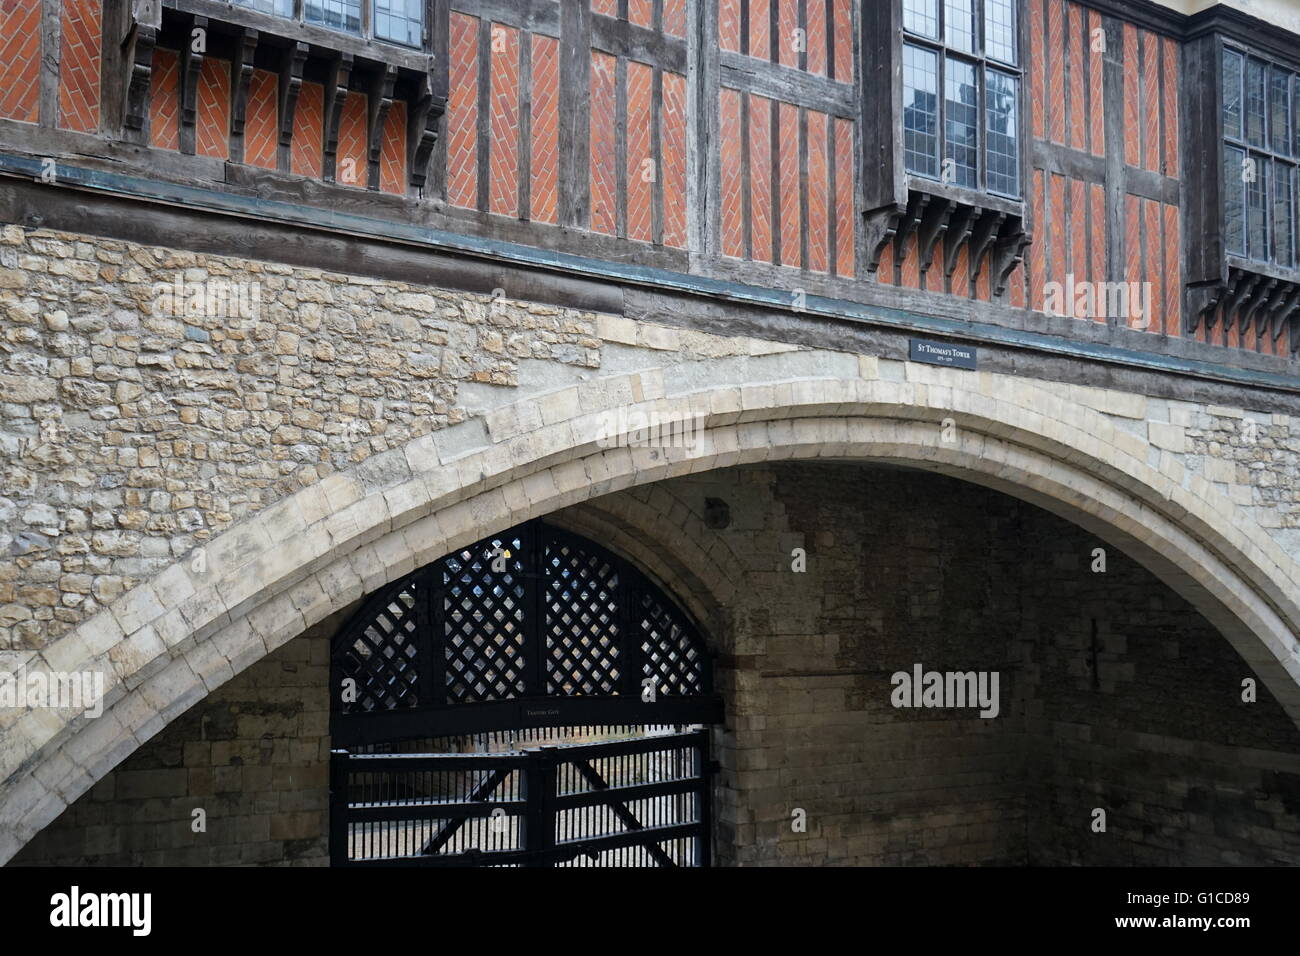 La porte des traîtres à la Tour de Londres. Le prisonnier serait entré dans la Tour de Londres par cette porte. Construit par Édouard I (1239-1307). En date du 13e siècle Banque D'Images